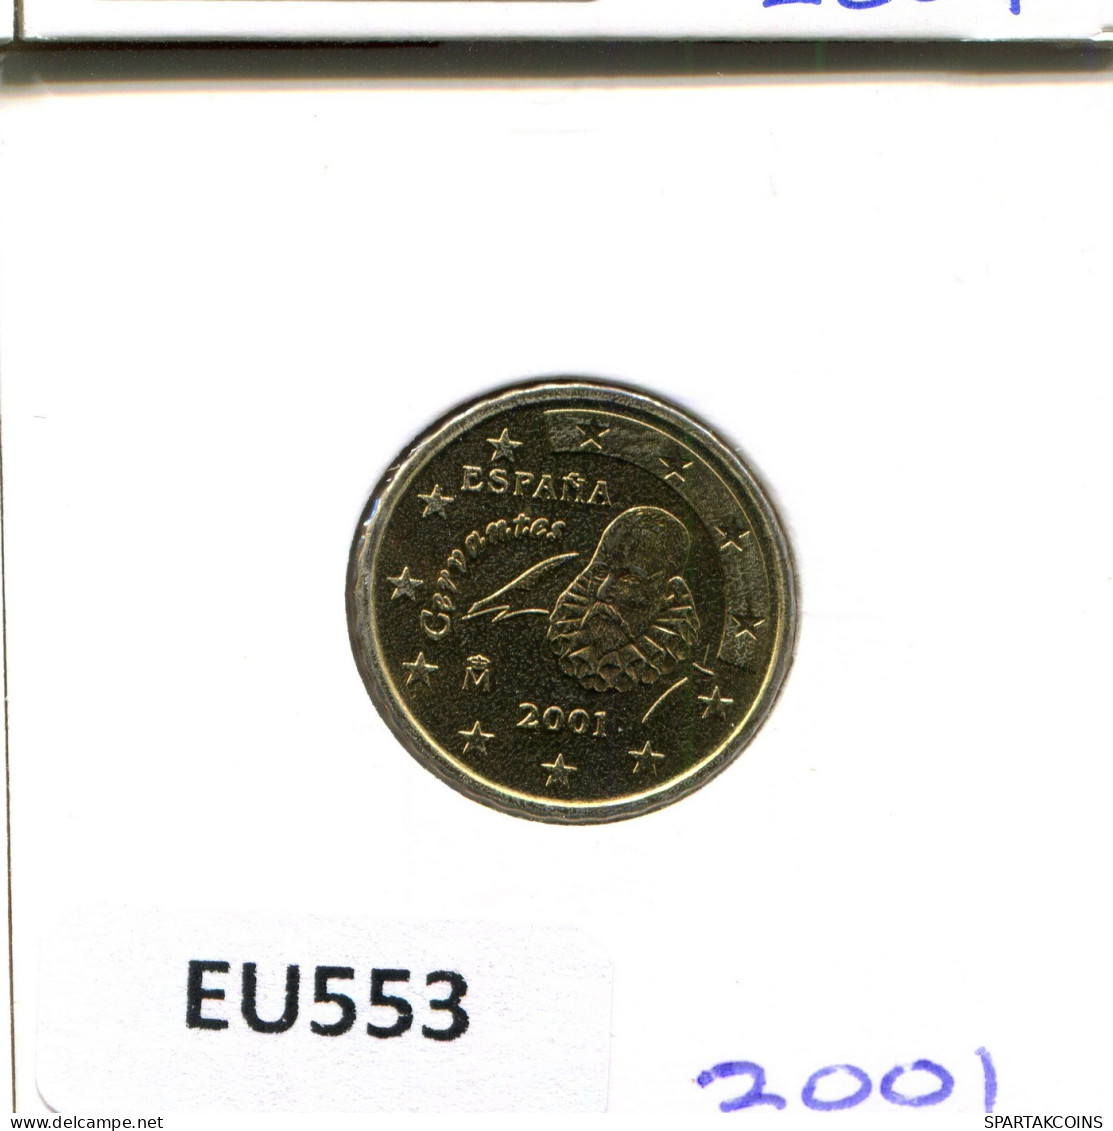 10 EURO CENTS 2001 SPANIEN SPAIN Münze #EU553.D.A - Espagne